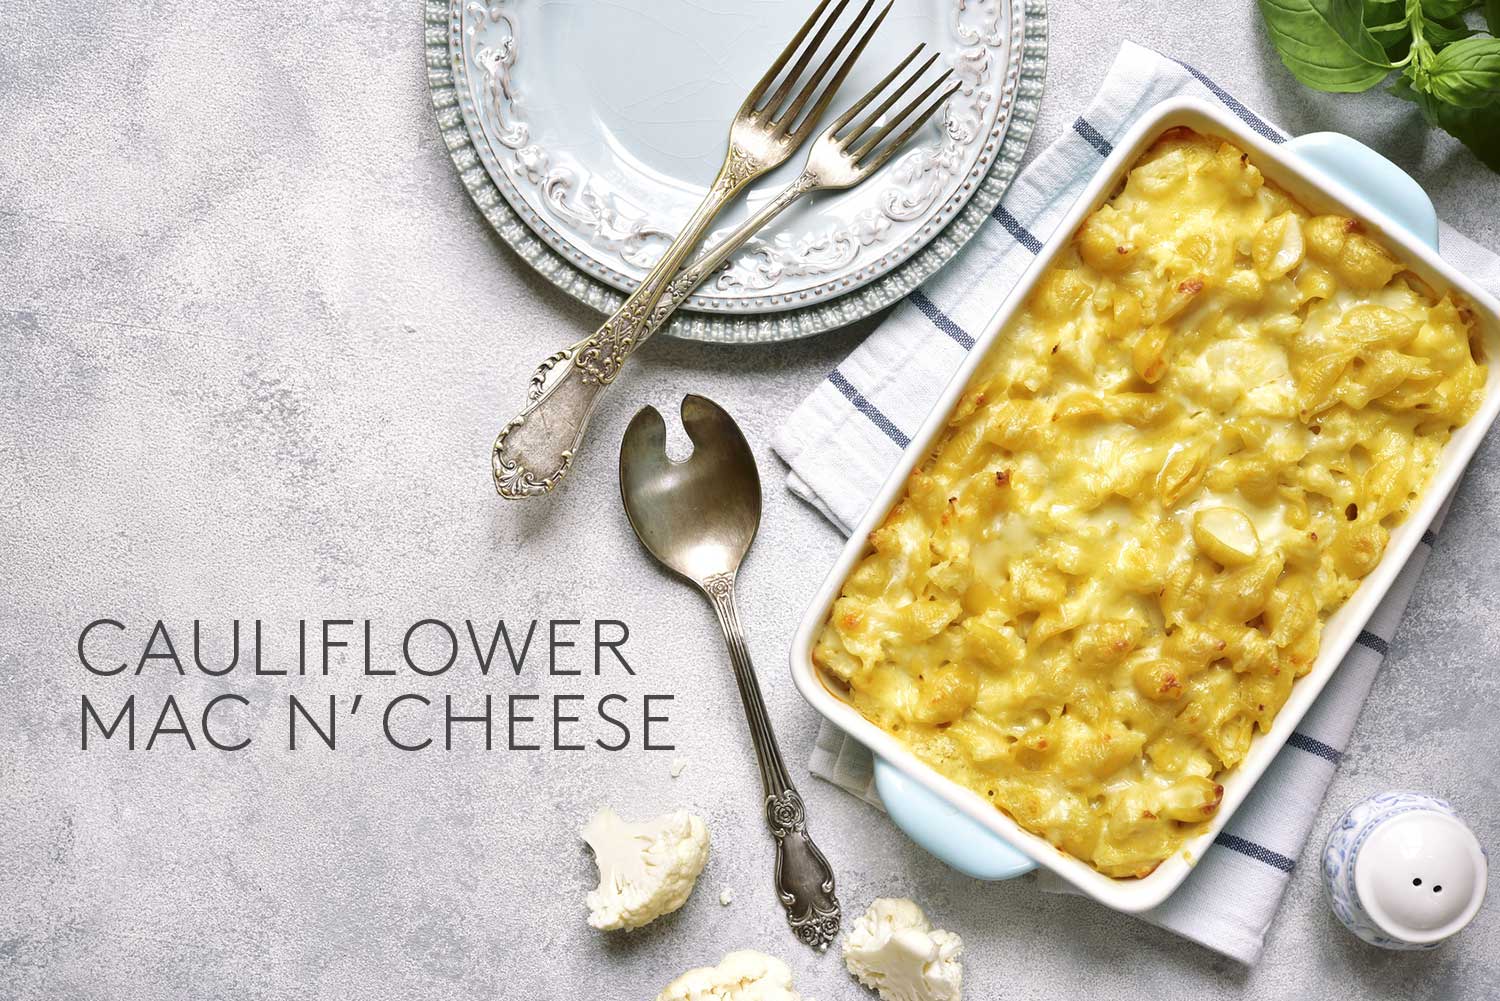 Cauliflower Mac N' Cheese